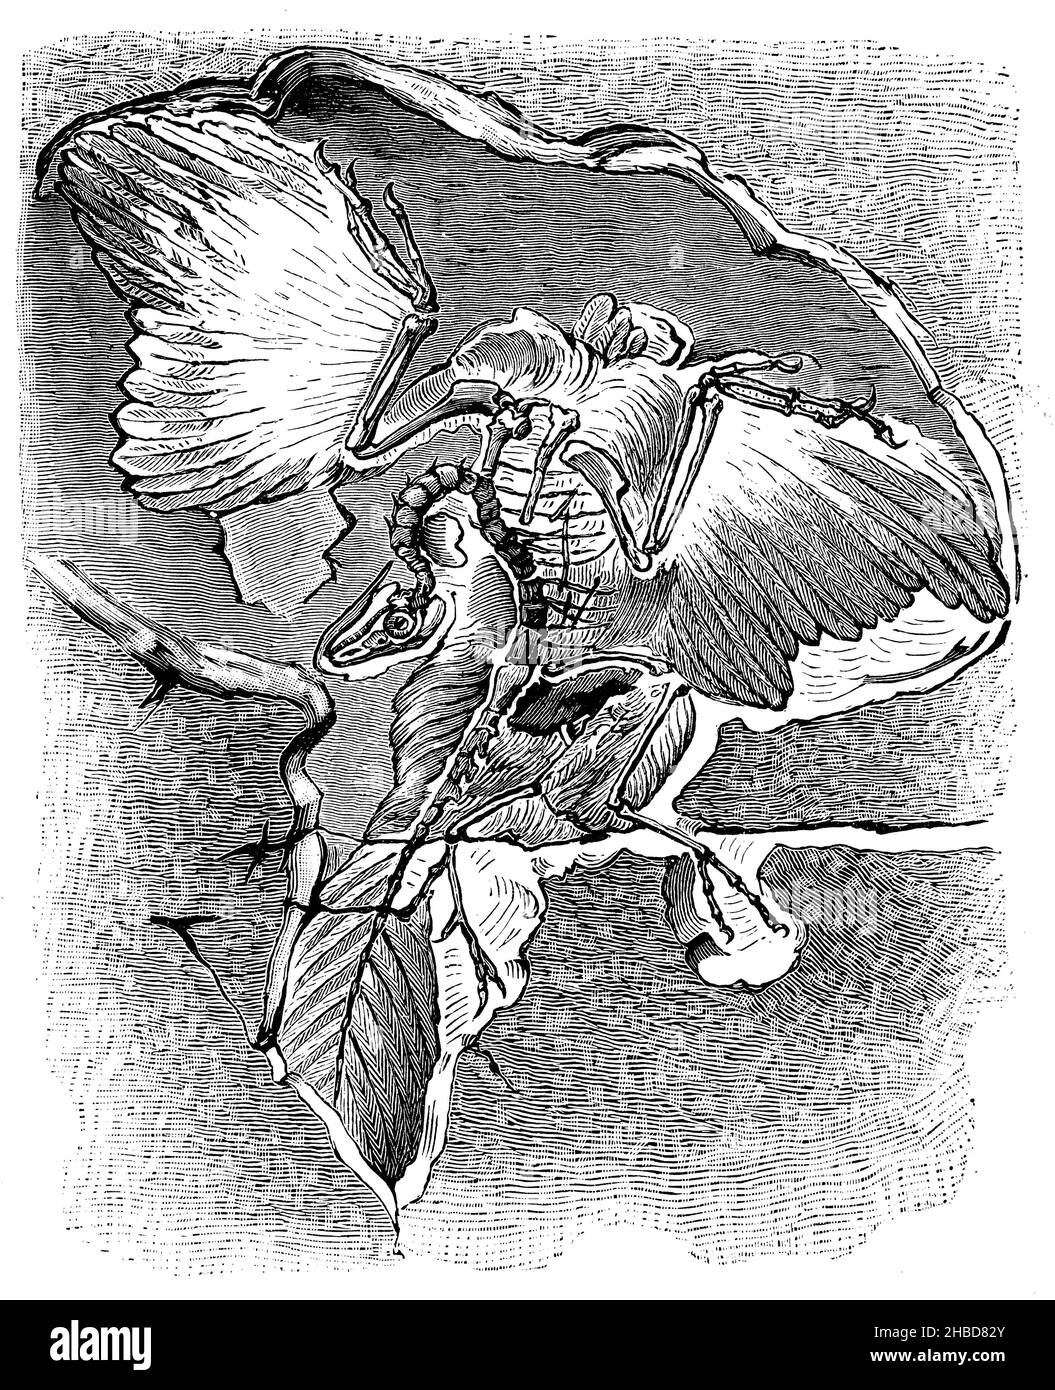 Archaeopteryx macrurus, a prehistoric bird, found in the Plattenkalk rocks of Solnhofen, , anonym (evolution history book, 1890), Archaeopteryx macrurus, ein Urvogel, im Plattenkalkgestein von Solnhofen gefunden, Archaeopteryx macrurus, un oiseau préhistorique, trouvé dans le calcaire en plaques de Solnhofen Stock Photo